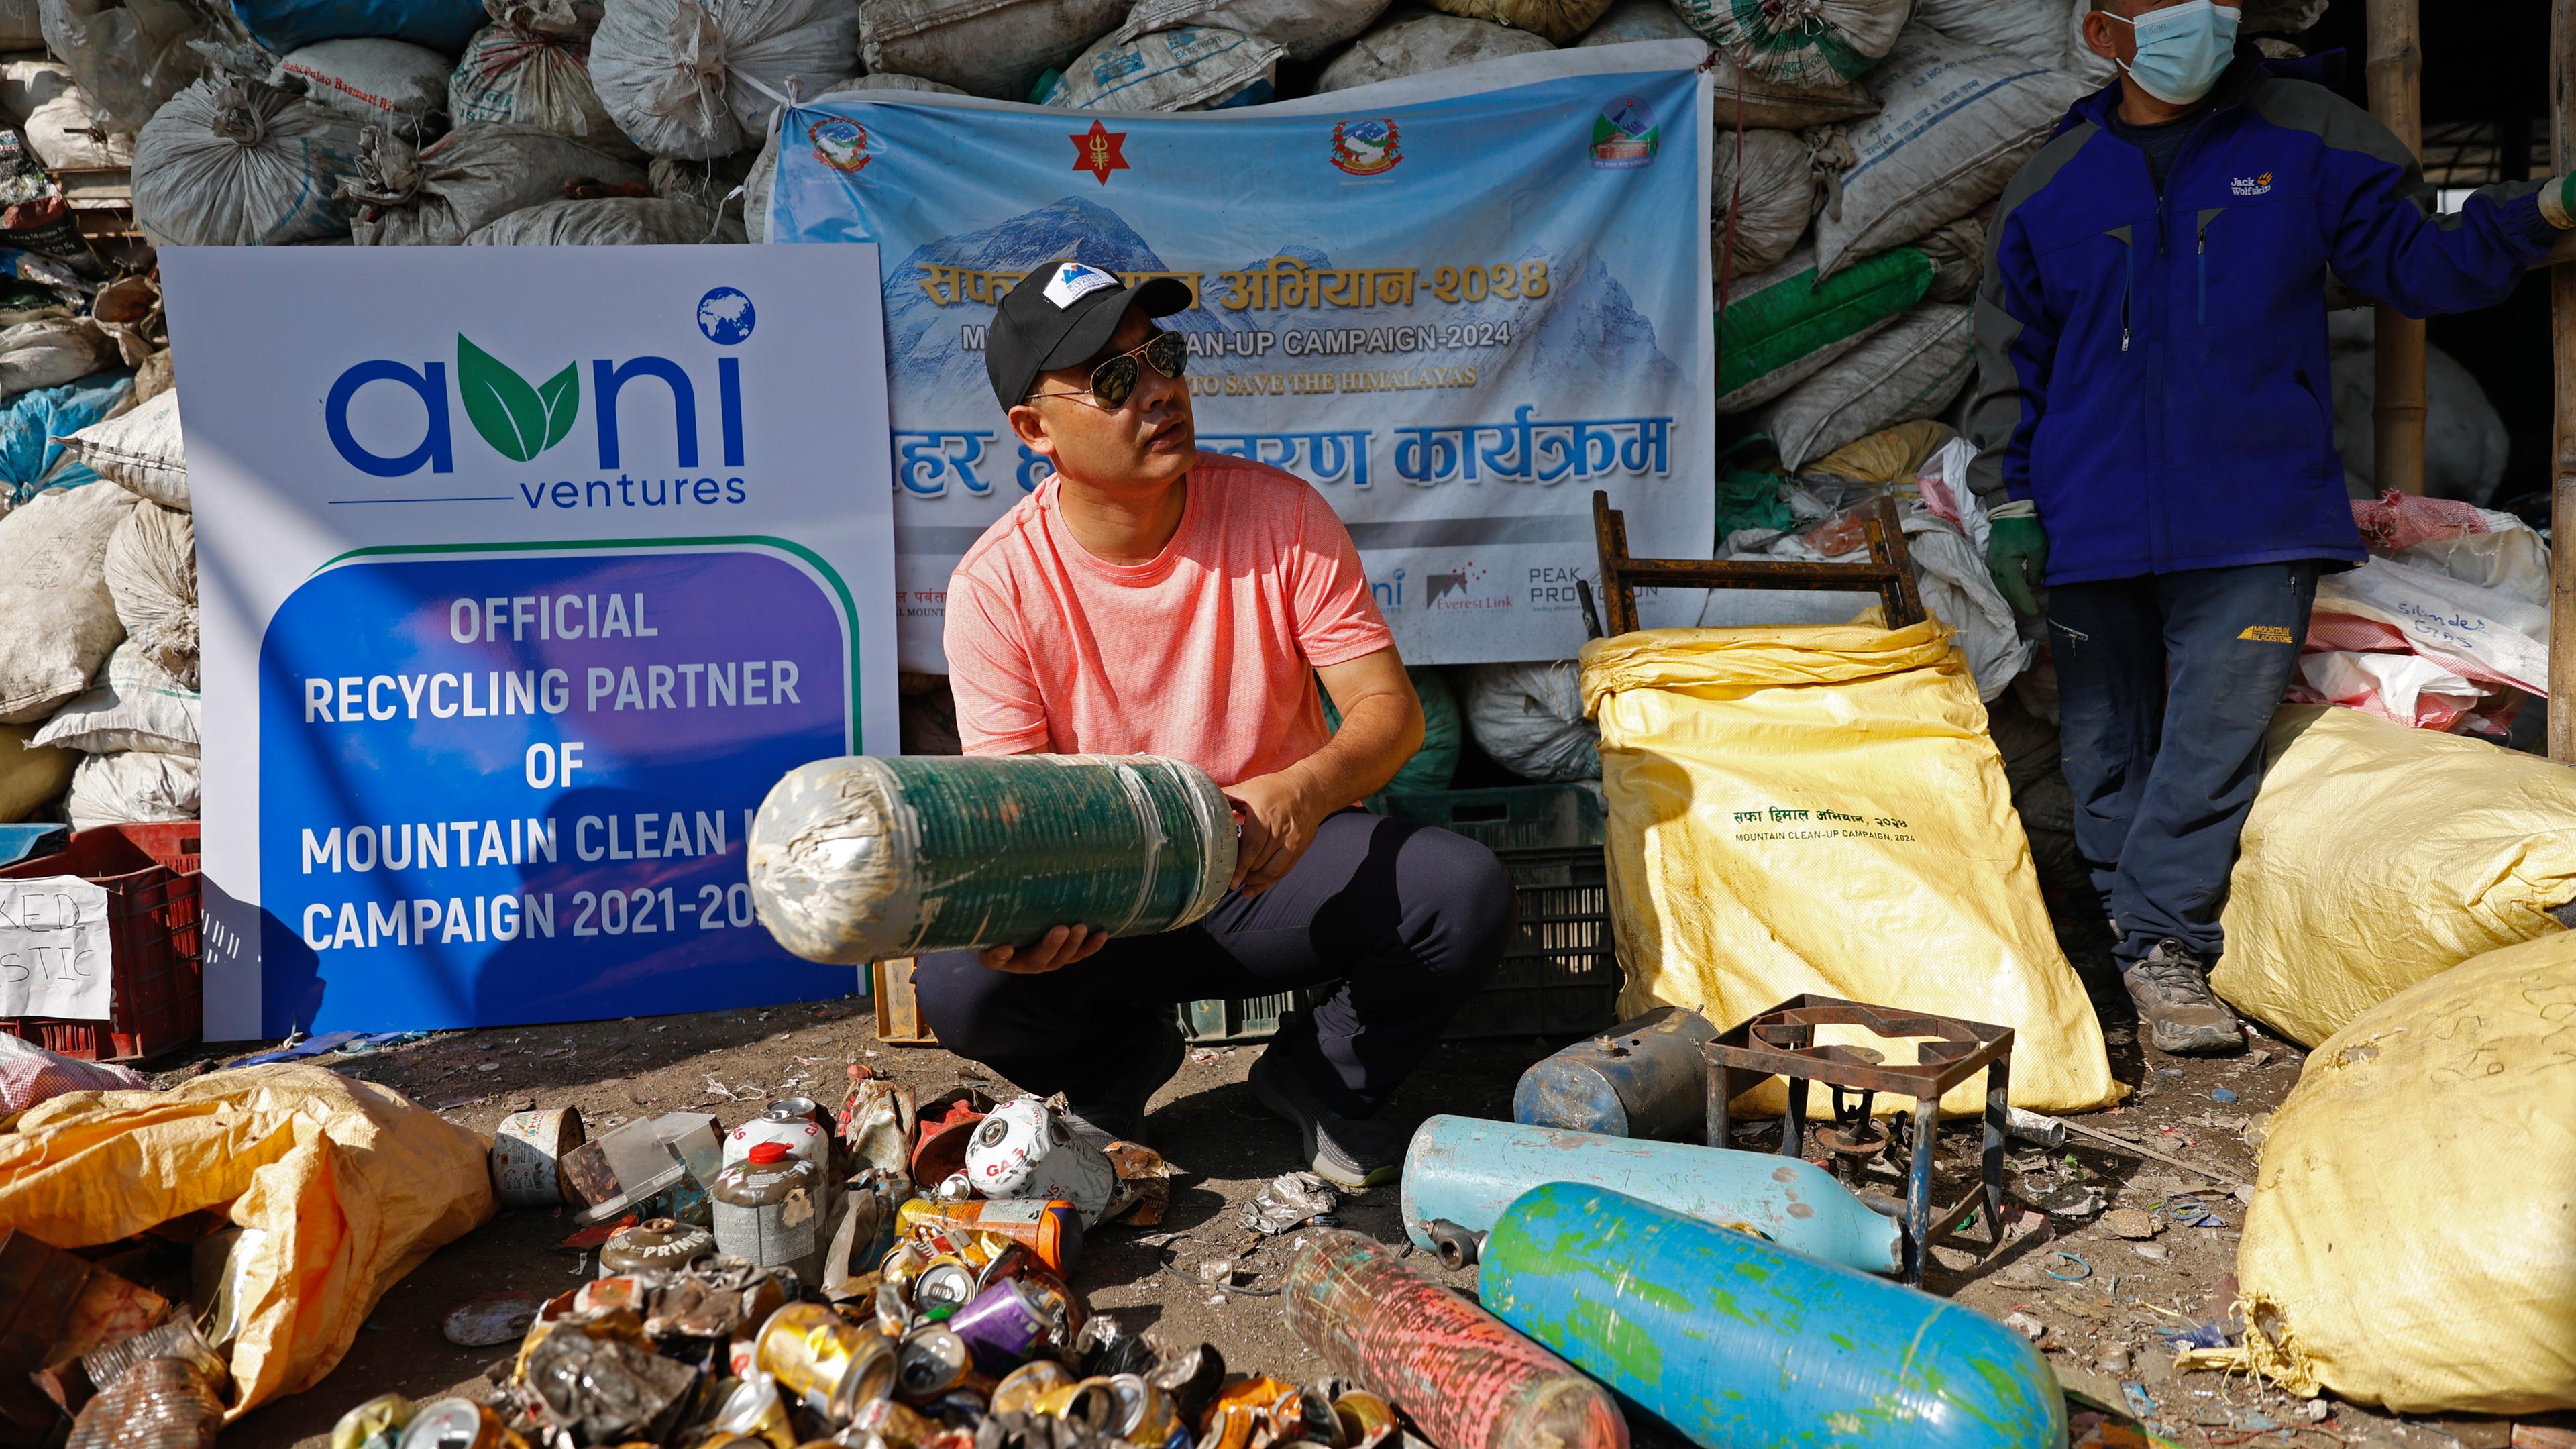 Nepal, Kathmandu: Sushil Khadga von Agni Ventures, einer Agentur, die sich um wiederverwertbare Abfälle kümmert, überprüft eine gebrauchte Sauerstoffflasche, die auf dem Weg zum Mount Everest gesammelt wurde, bevor sie in der Anlage recycelt wird.